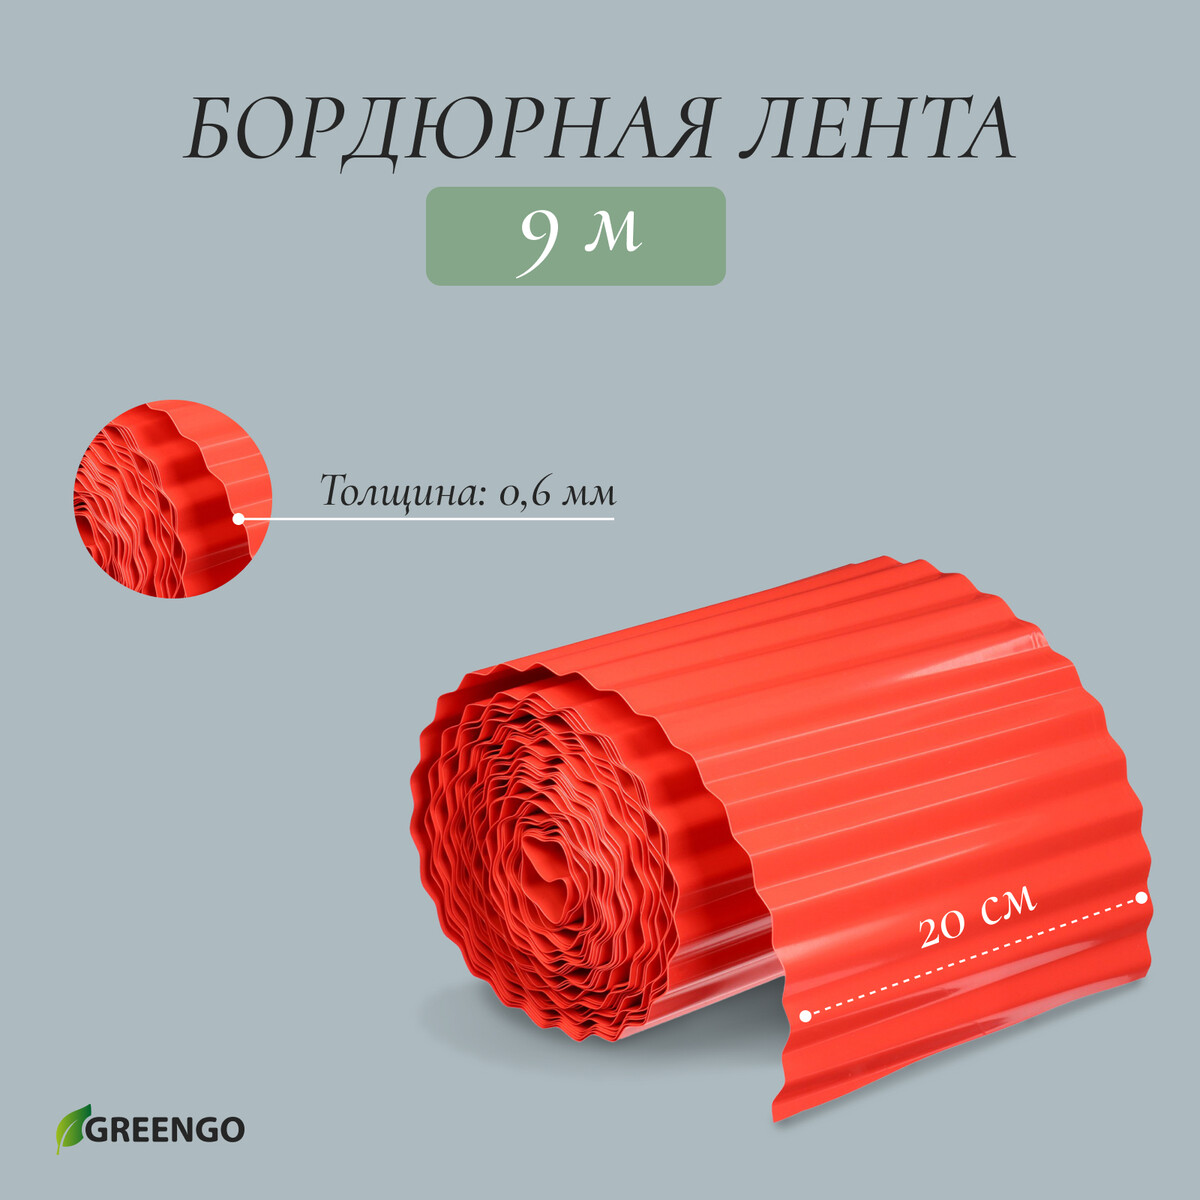 Лента бордюрная, 0.2 × 9 м, толщина 0.6 мм, пластиковая, гофра, терракот Greengo, цвет красный